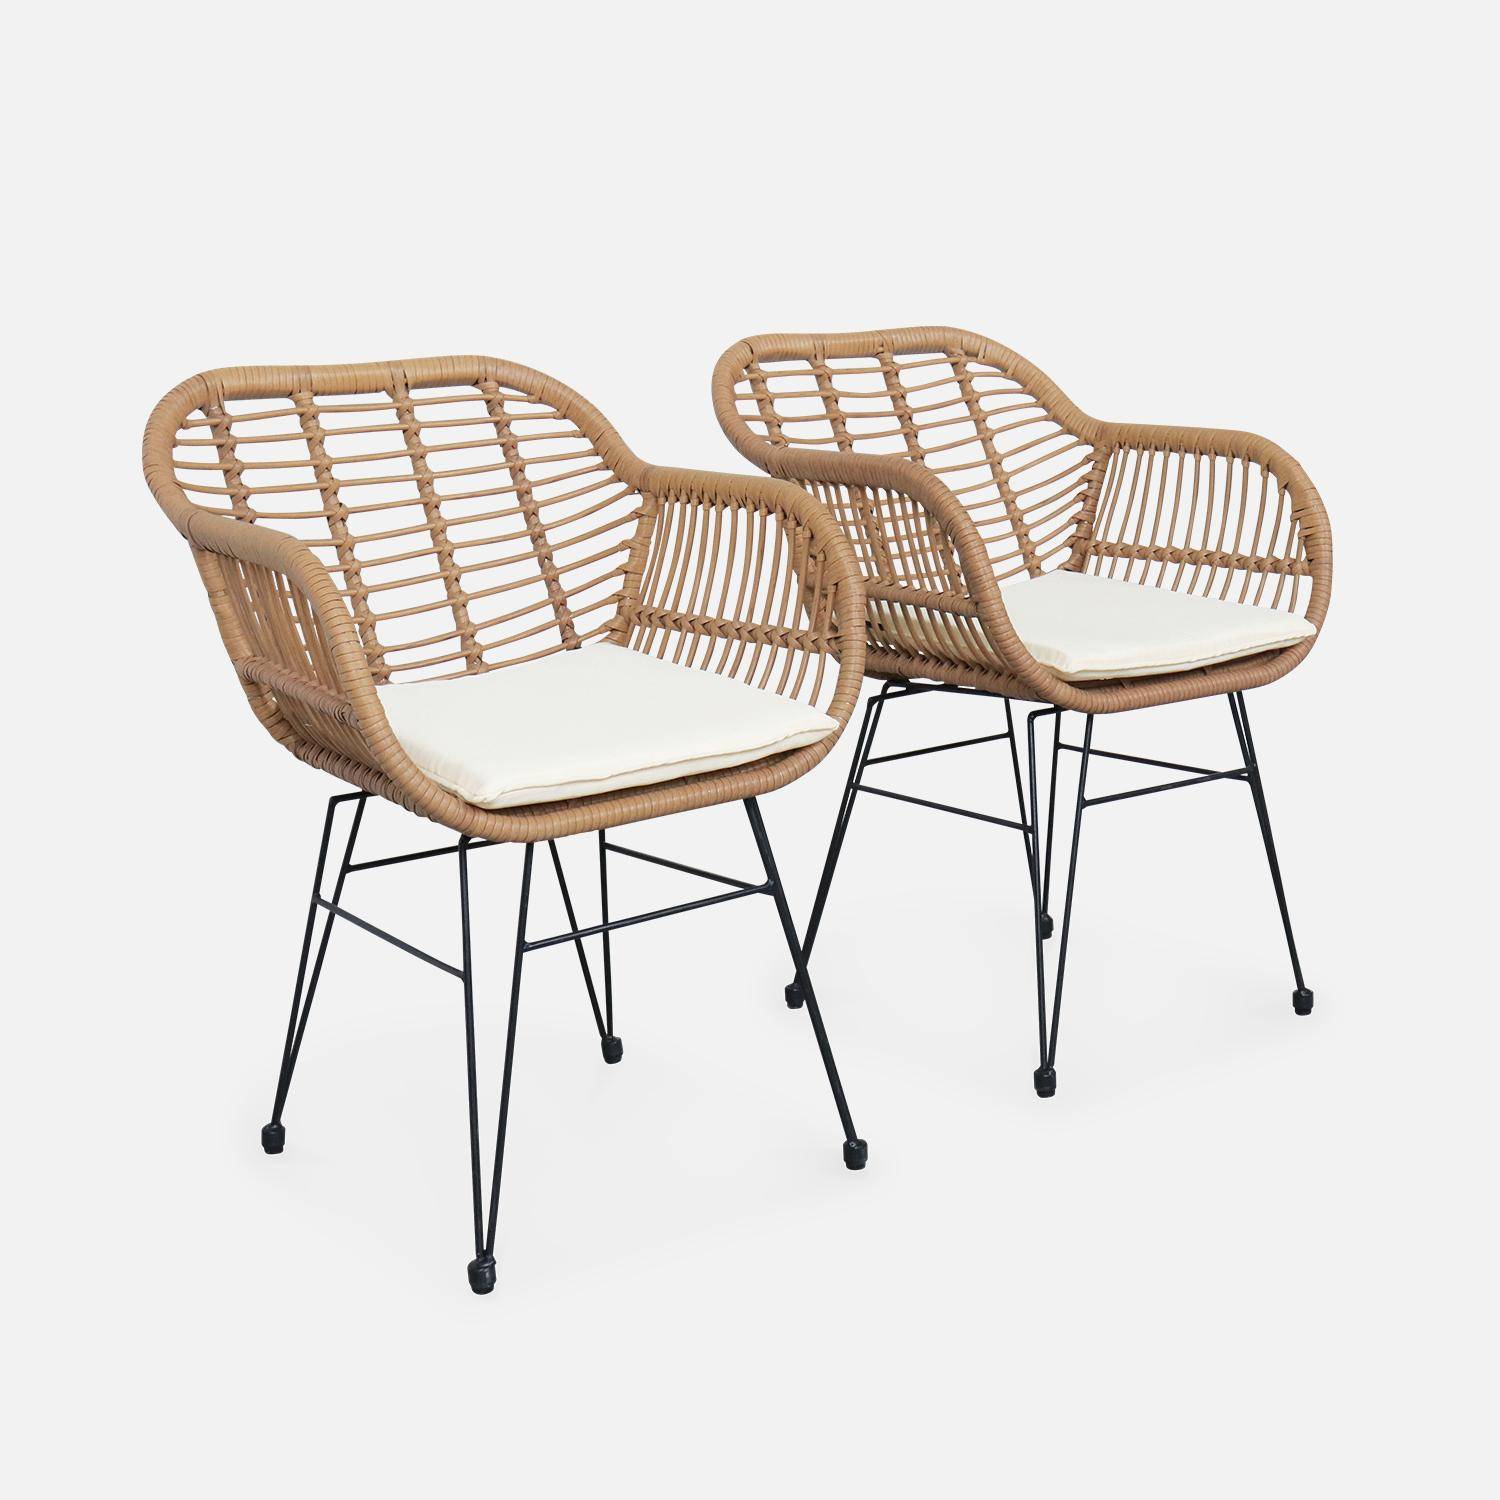 Set van 2 wicker stoelen met bamboe effect, zwart metalen frame, afneembare hoezen, beige kussen Photo4